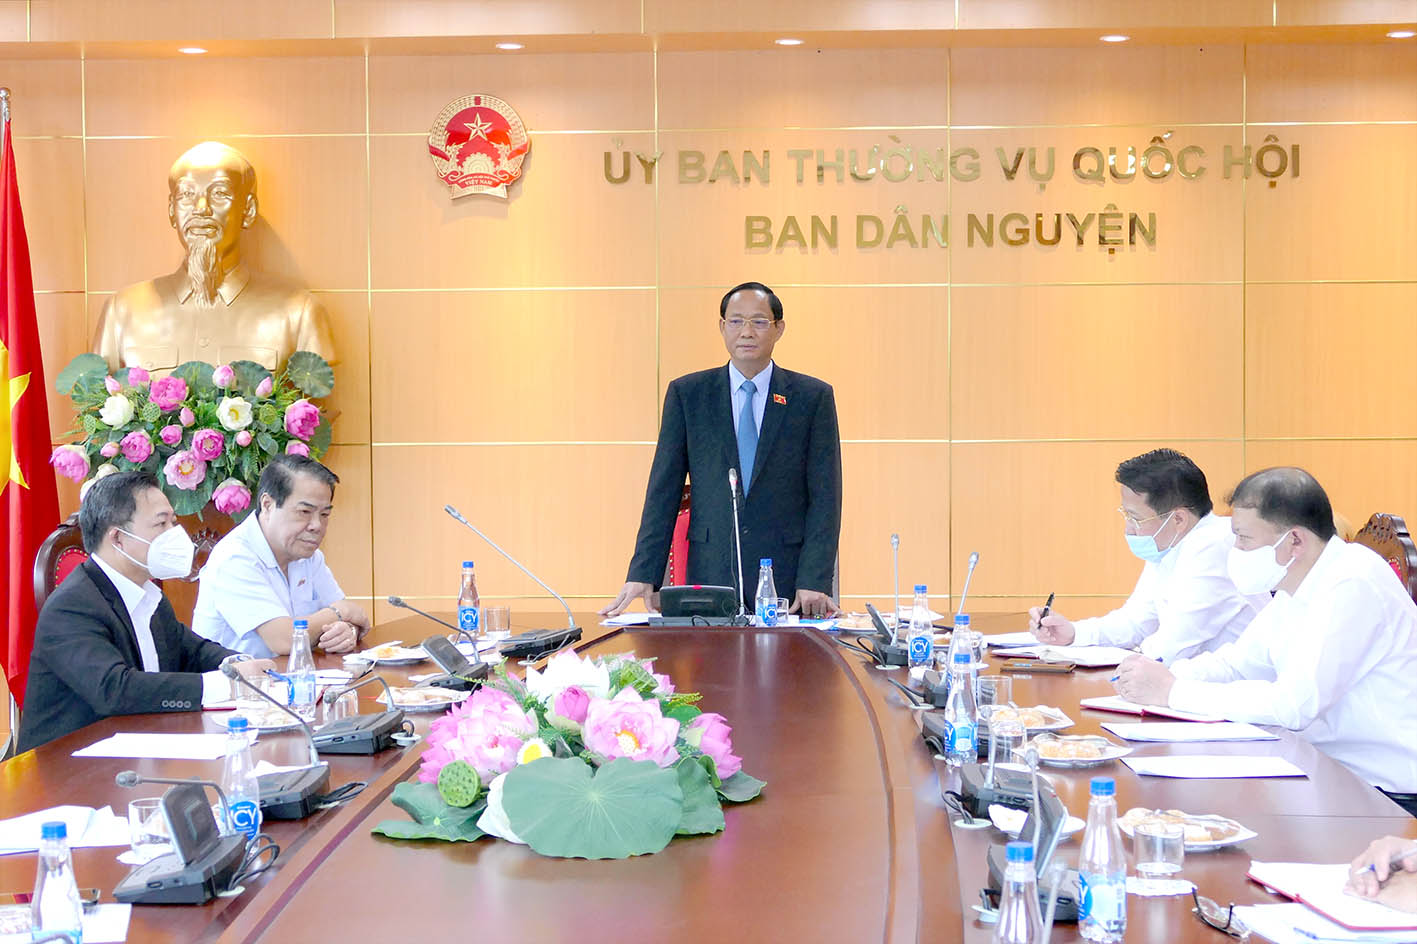 Phó Chủ tịch Quốc hội Trần Quang Phương phát biểu tại cuộc làm việc với Ban Dân nguyện